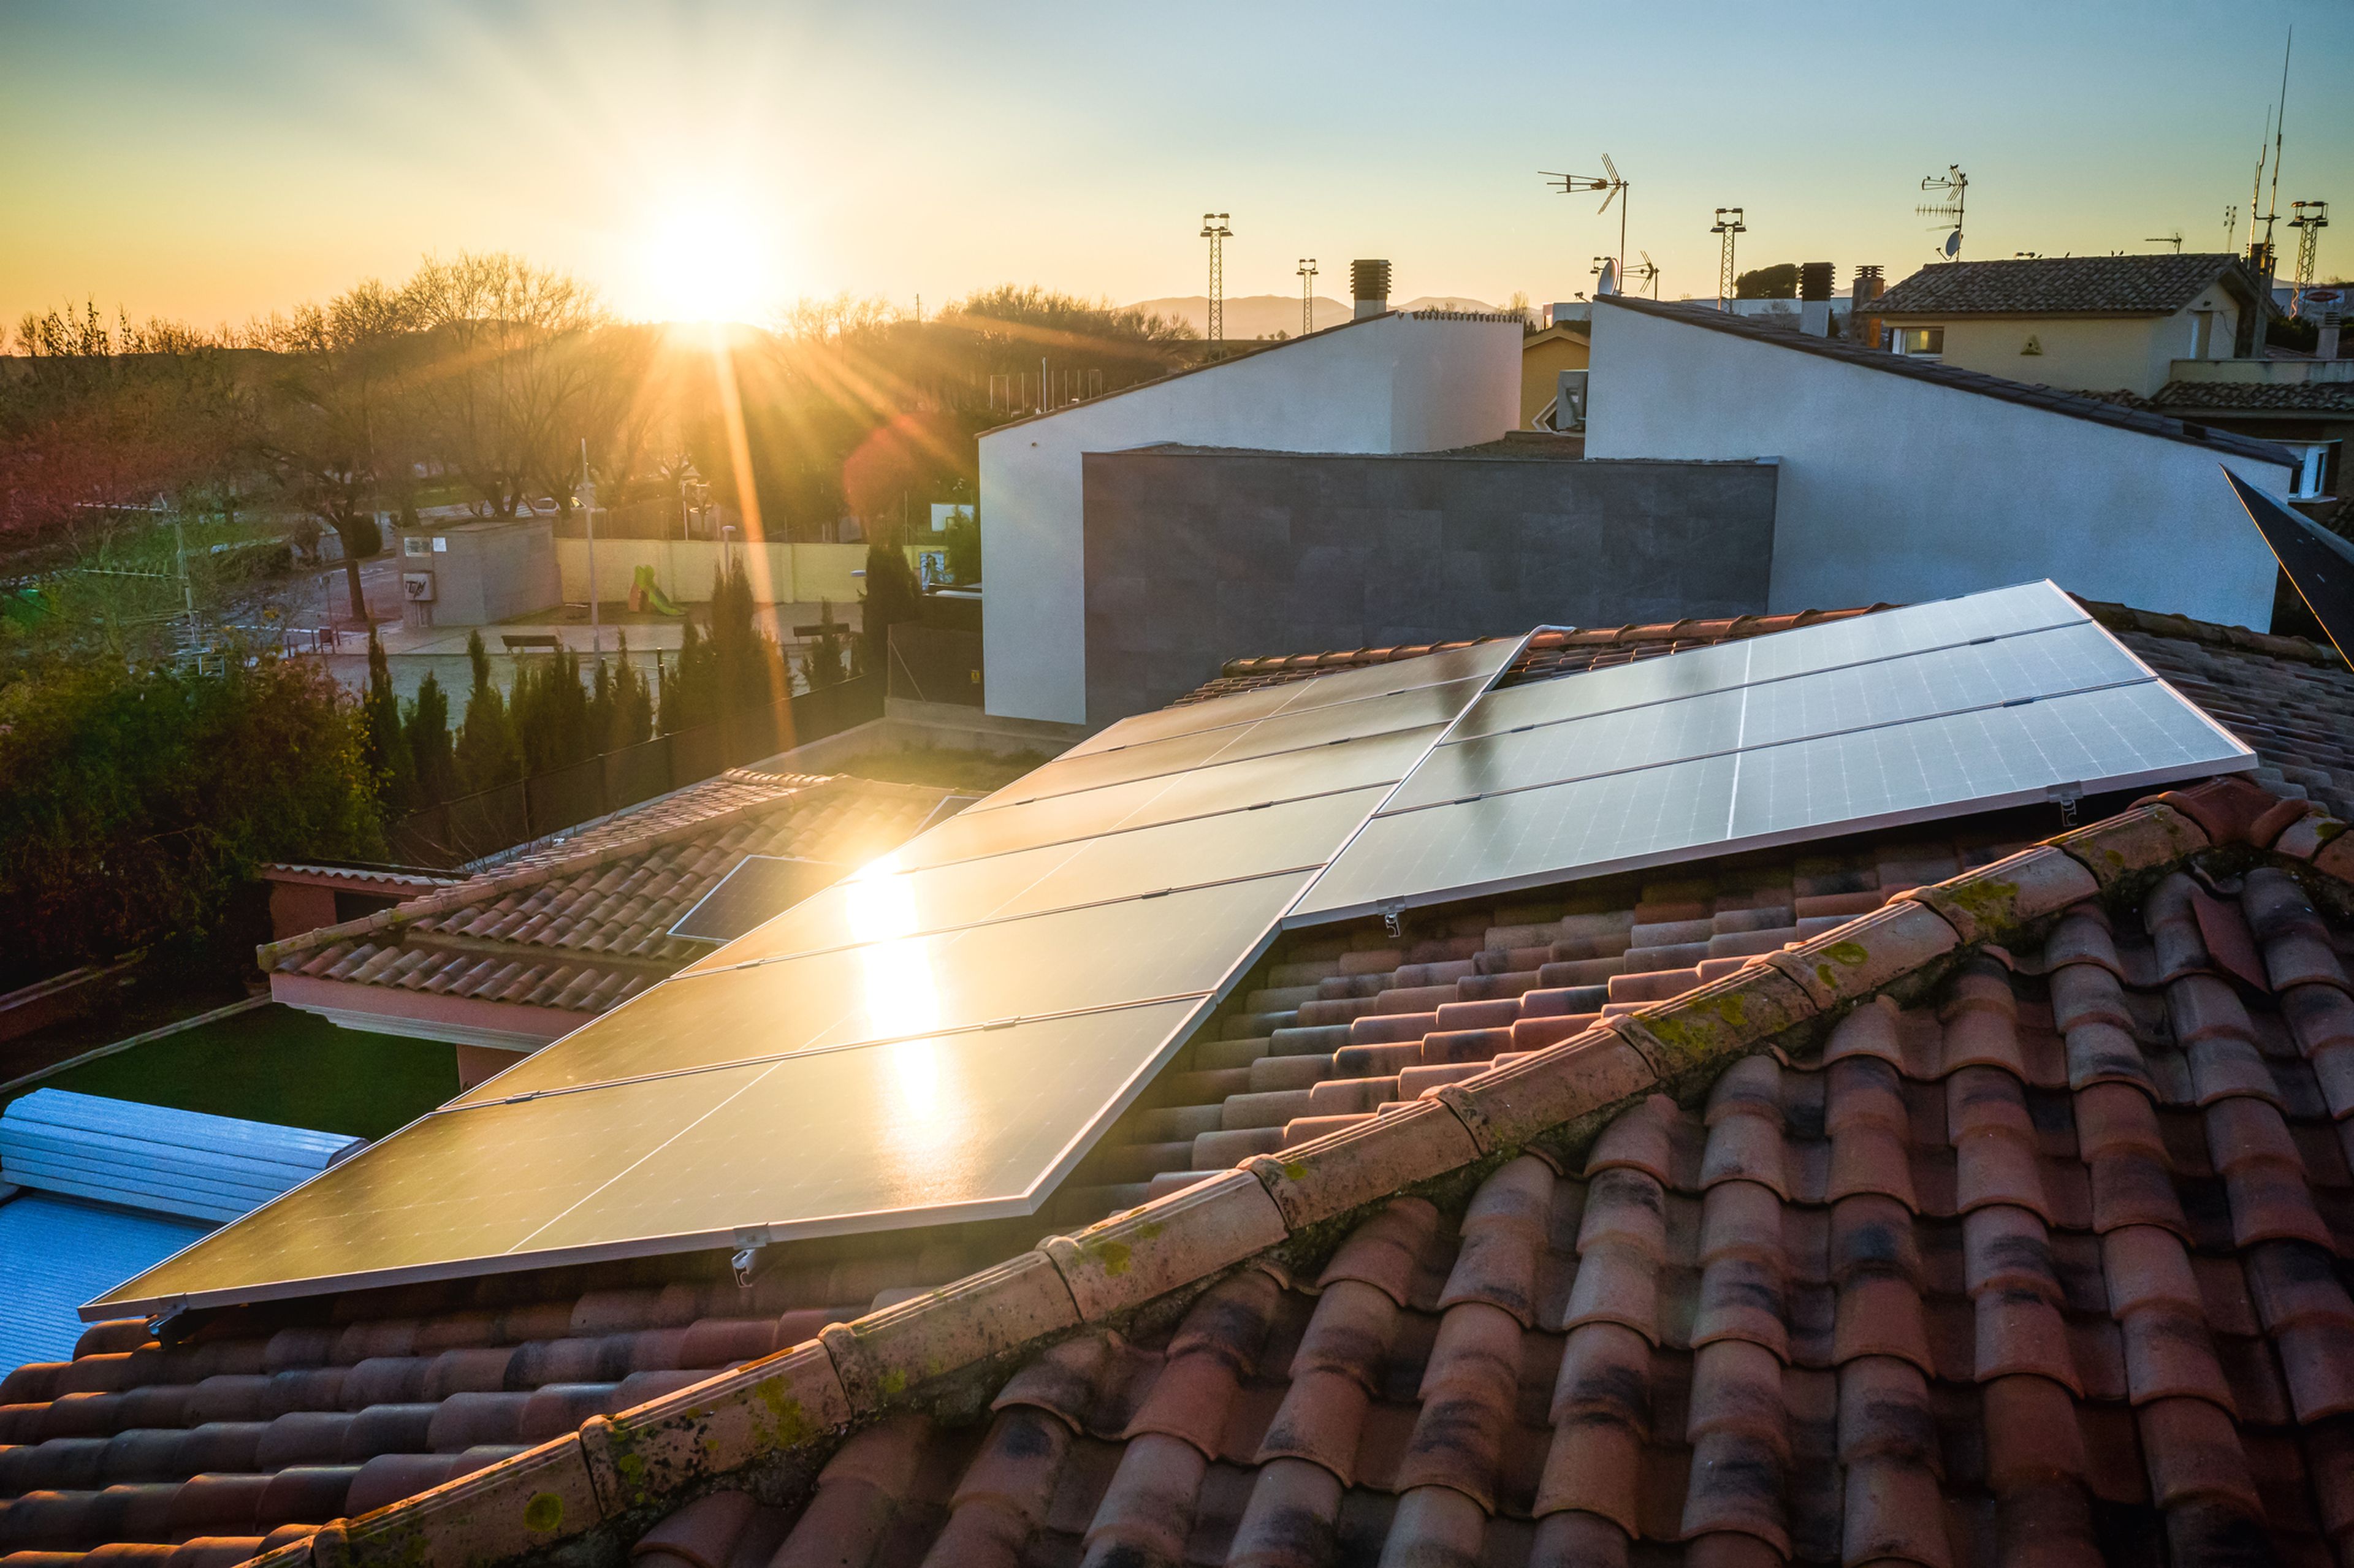 Cuánto se tarda en amortizar una instalación de placas solares?